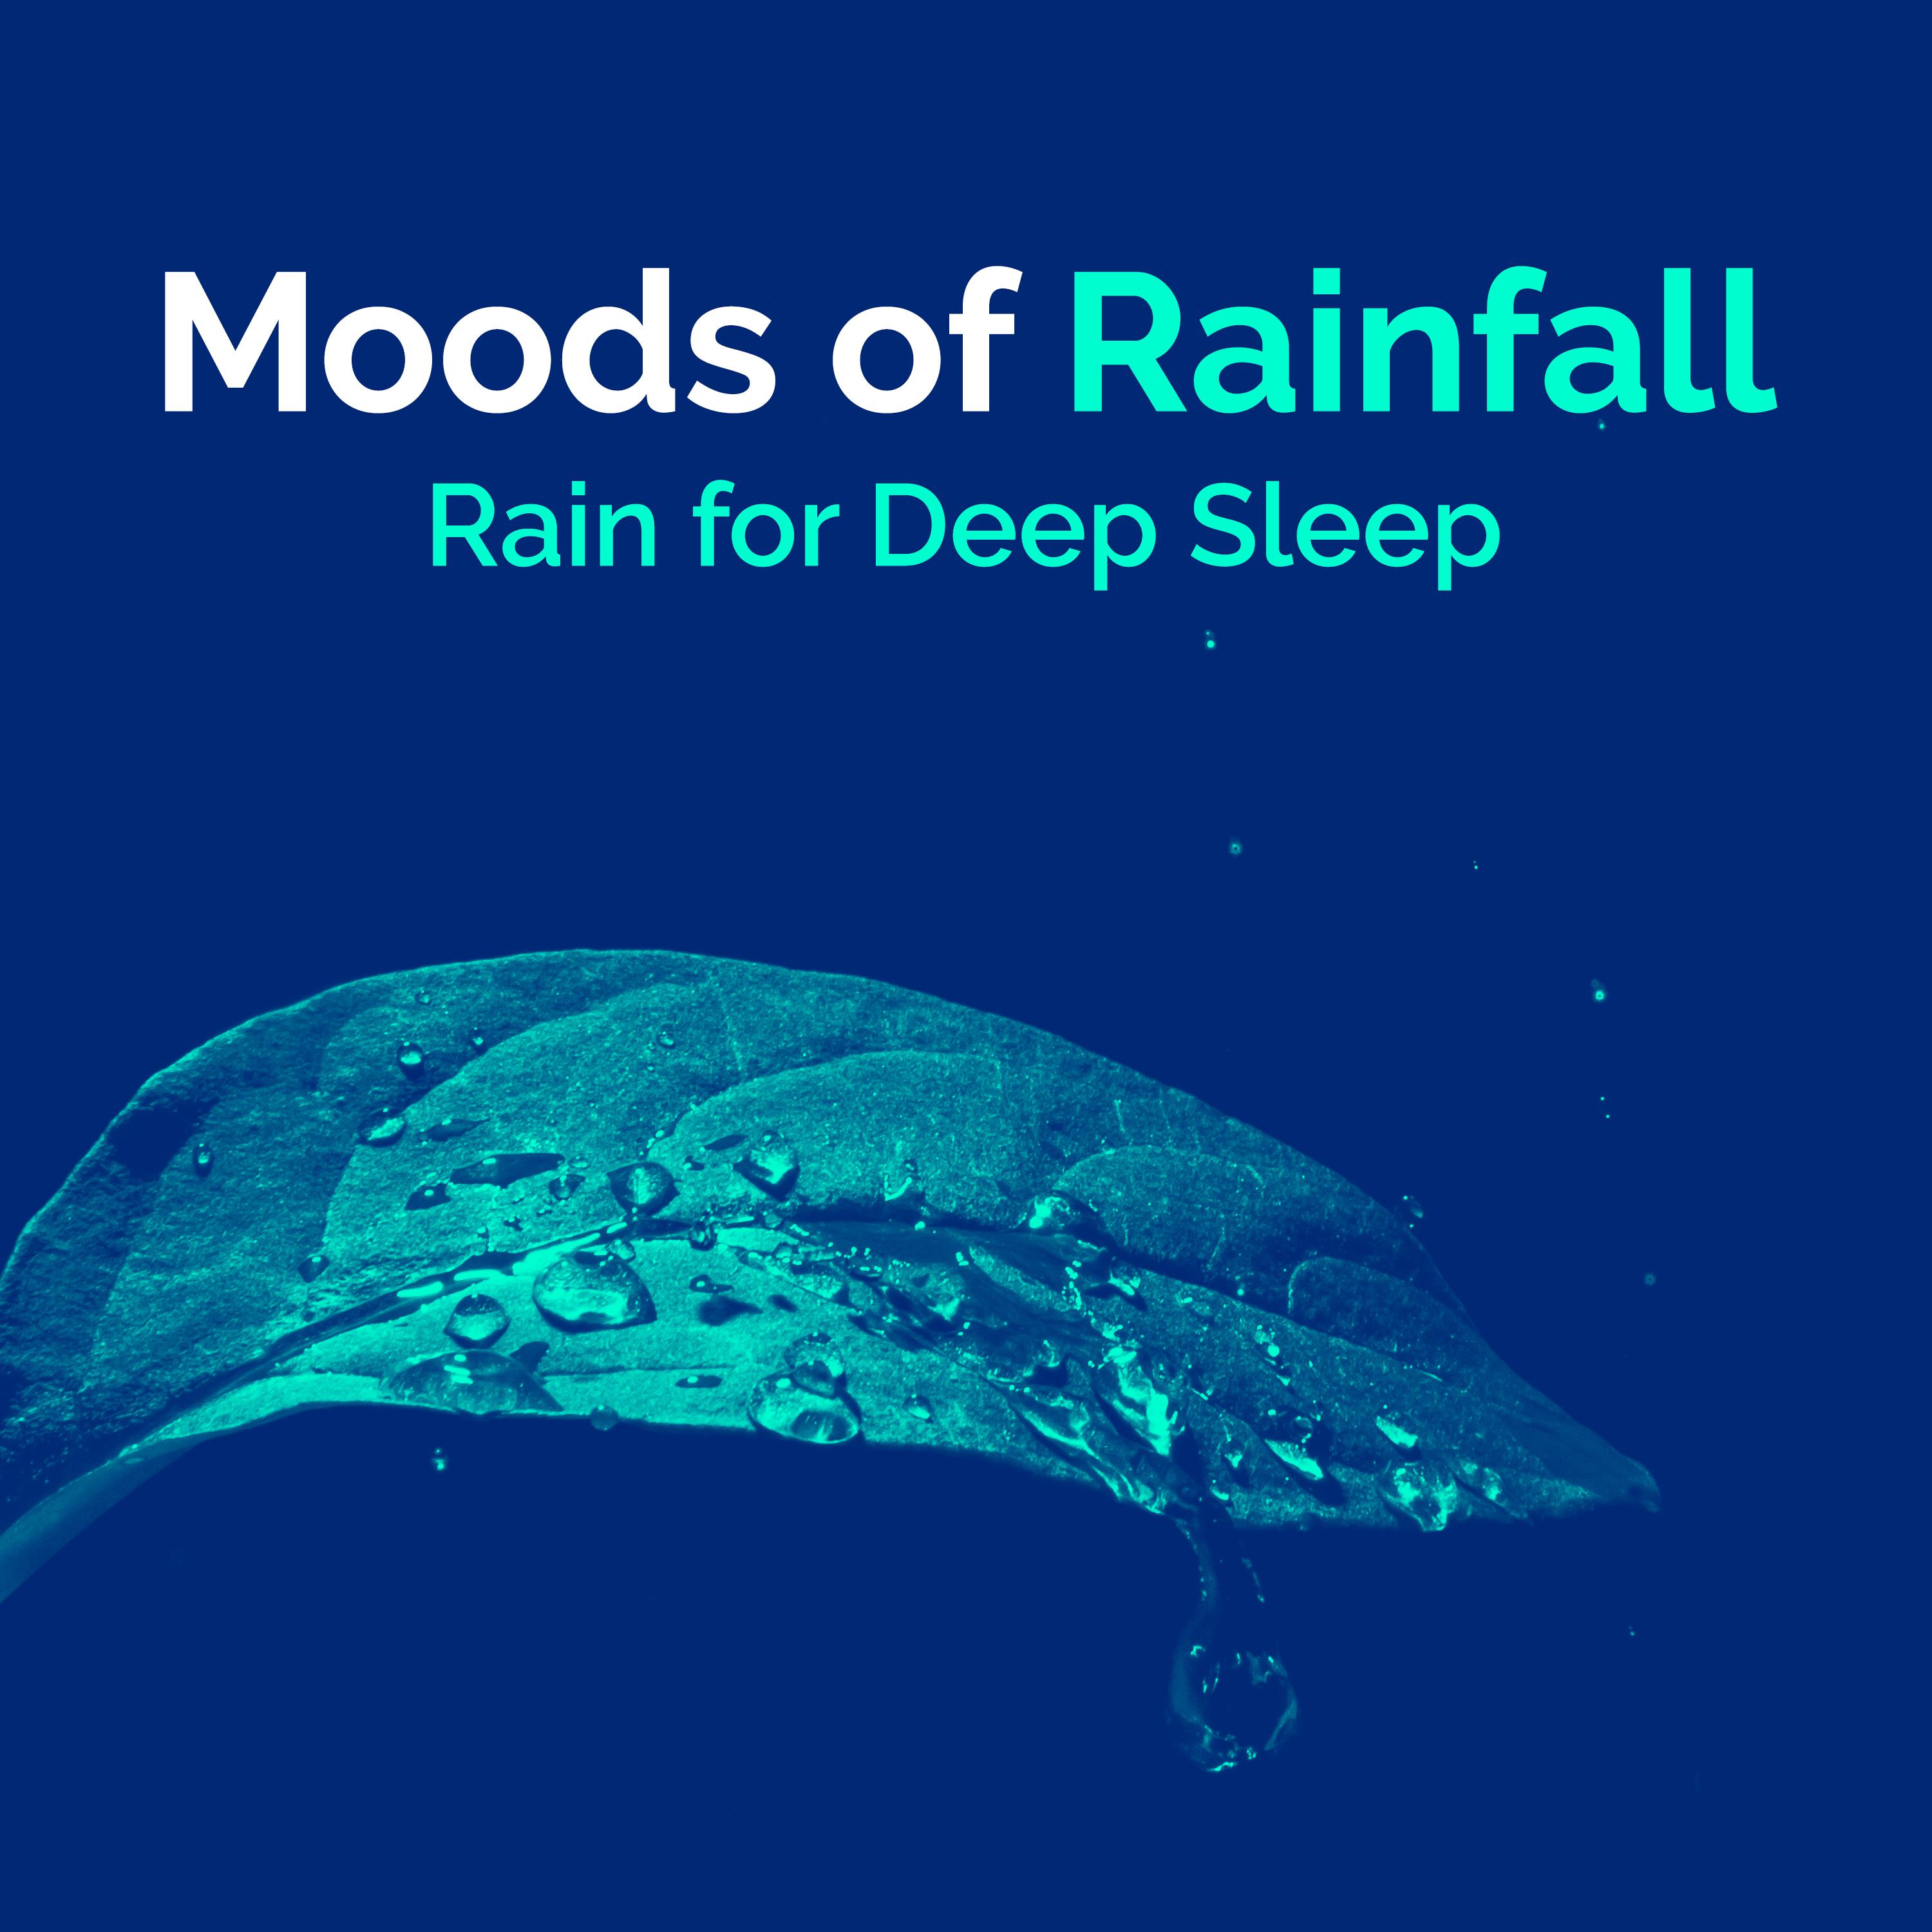 Moods of Rainfall